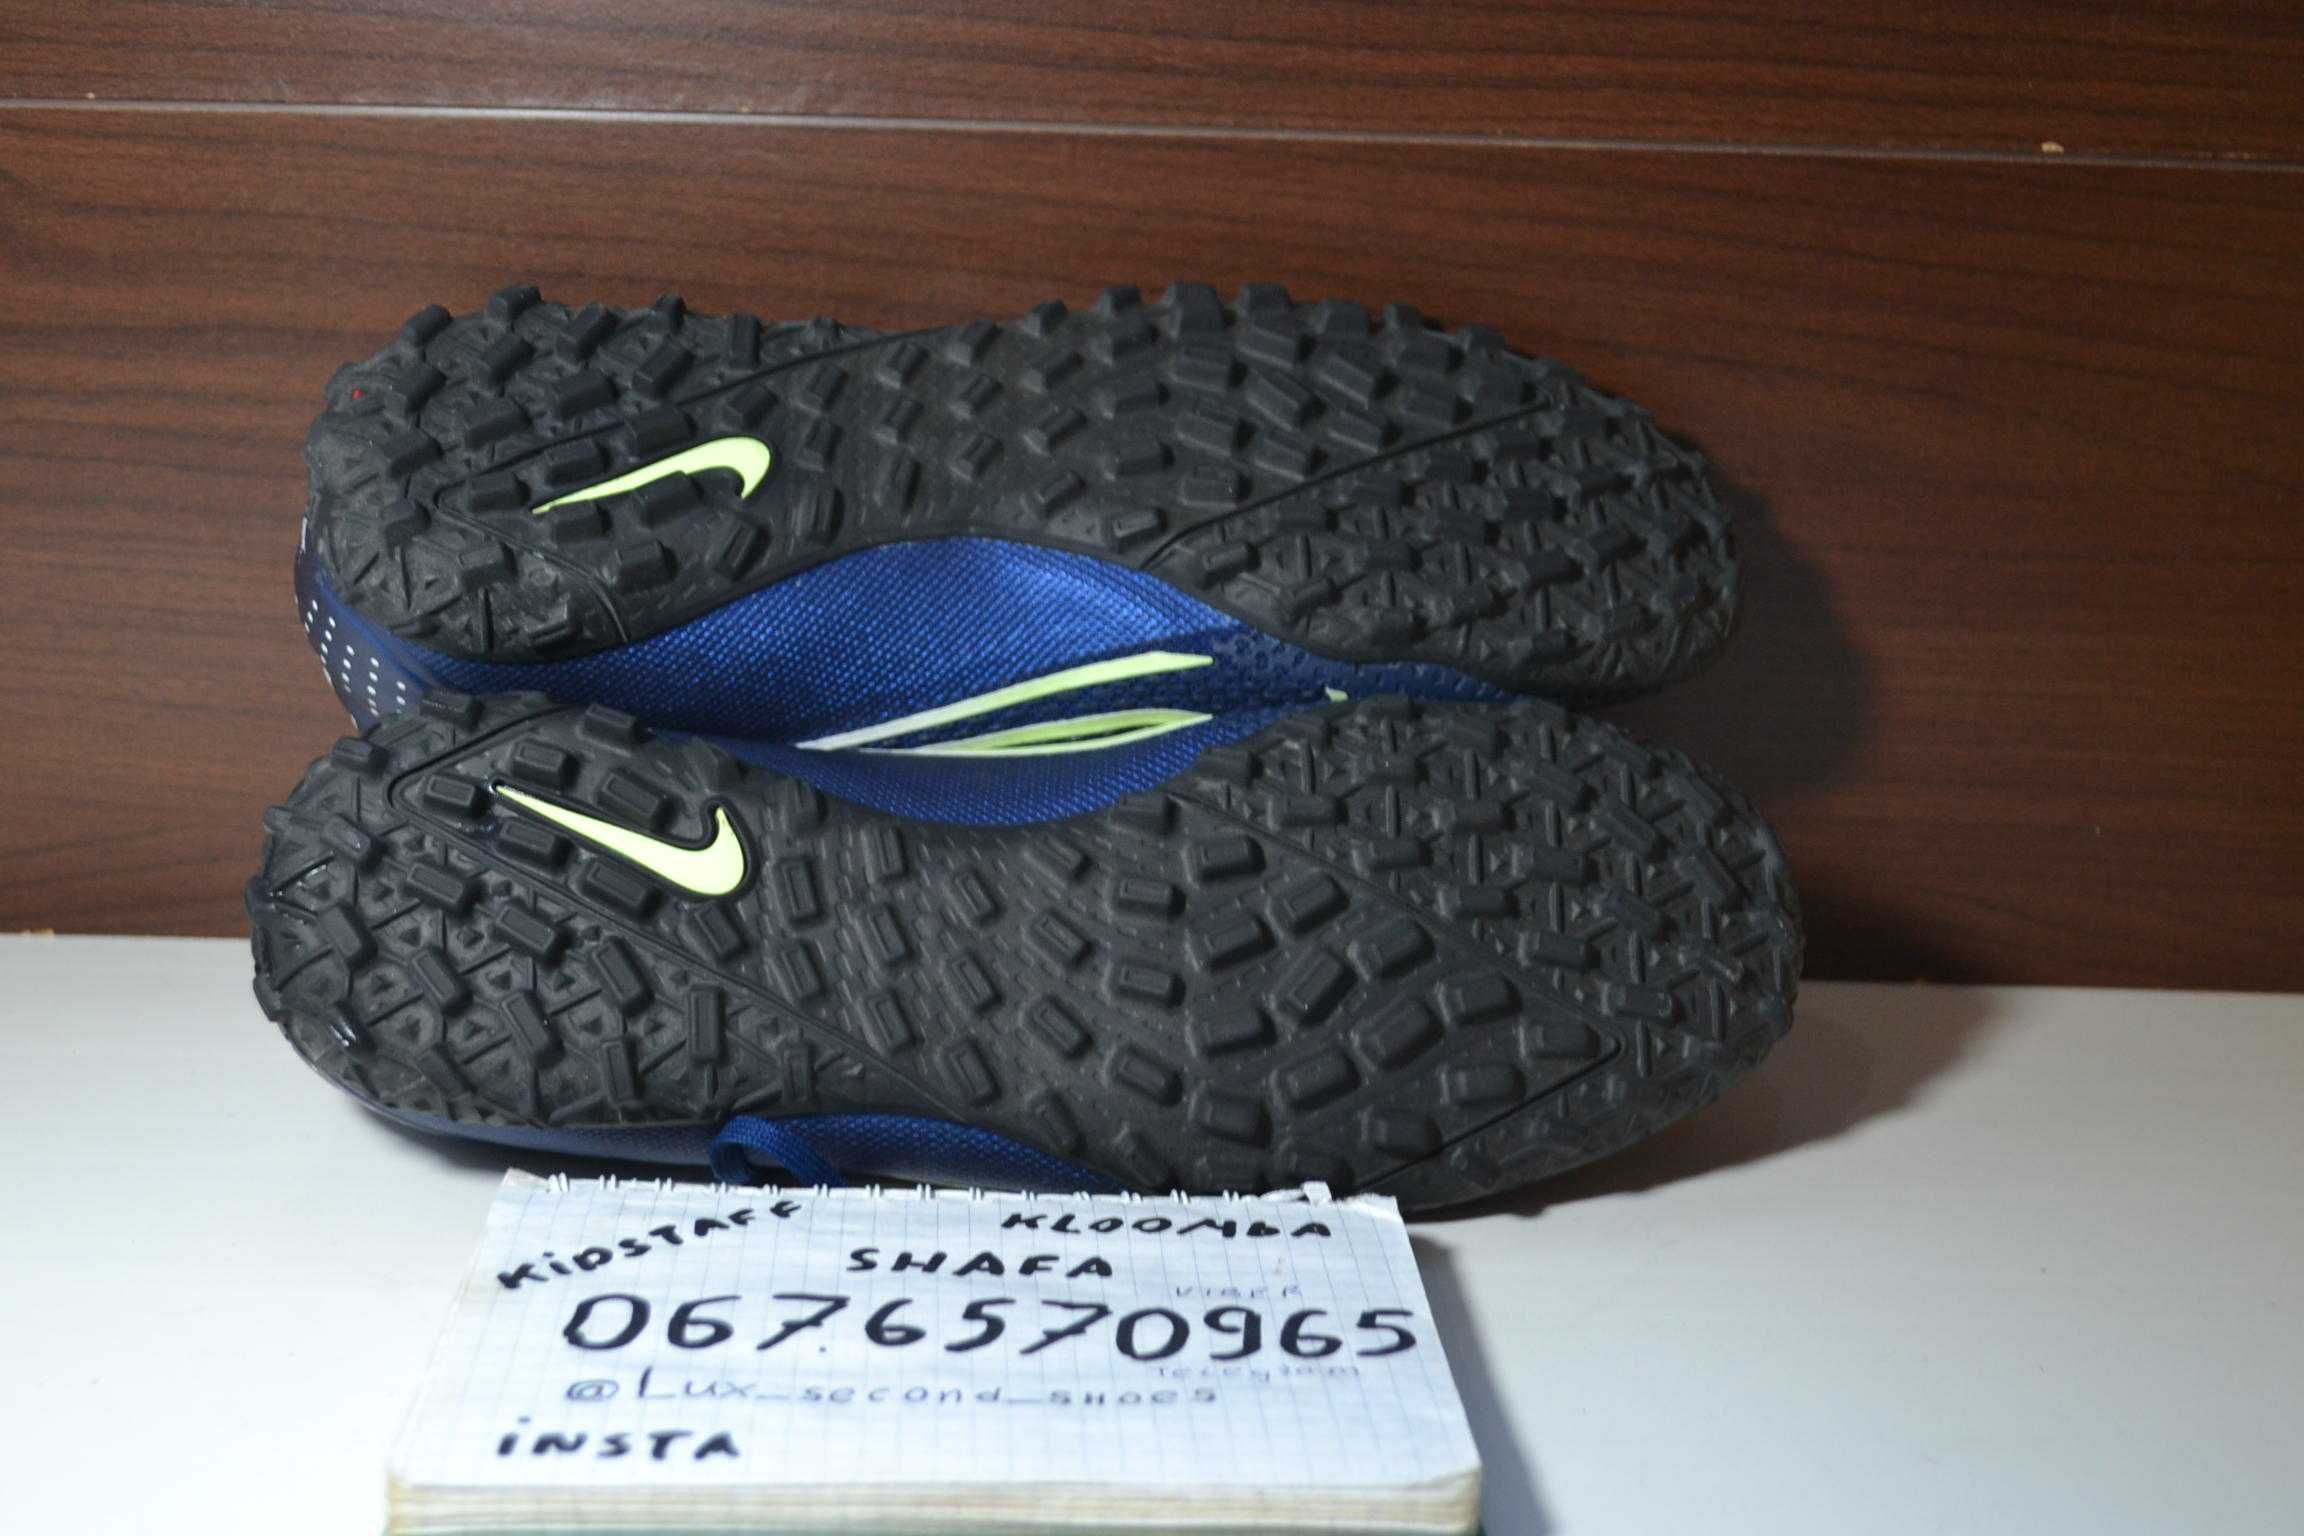 Nike vapor 13 pro mds tf 41р сороконожки бампы копочки бутсы футзалки